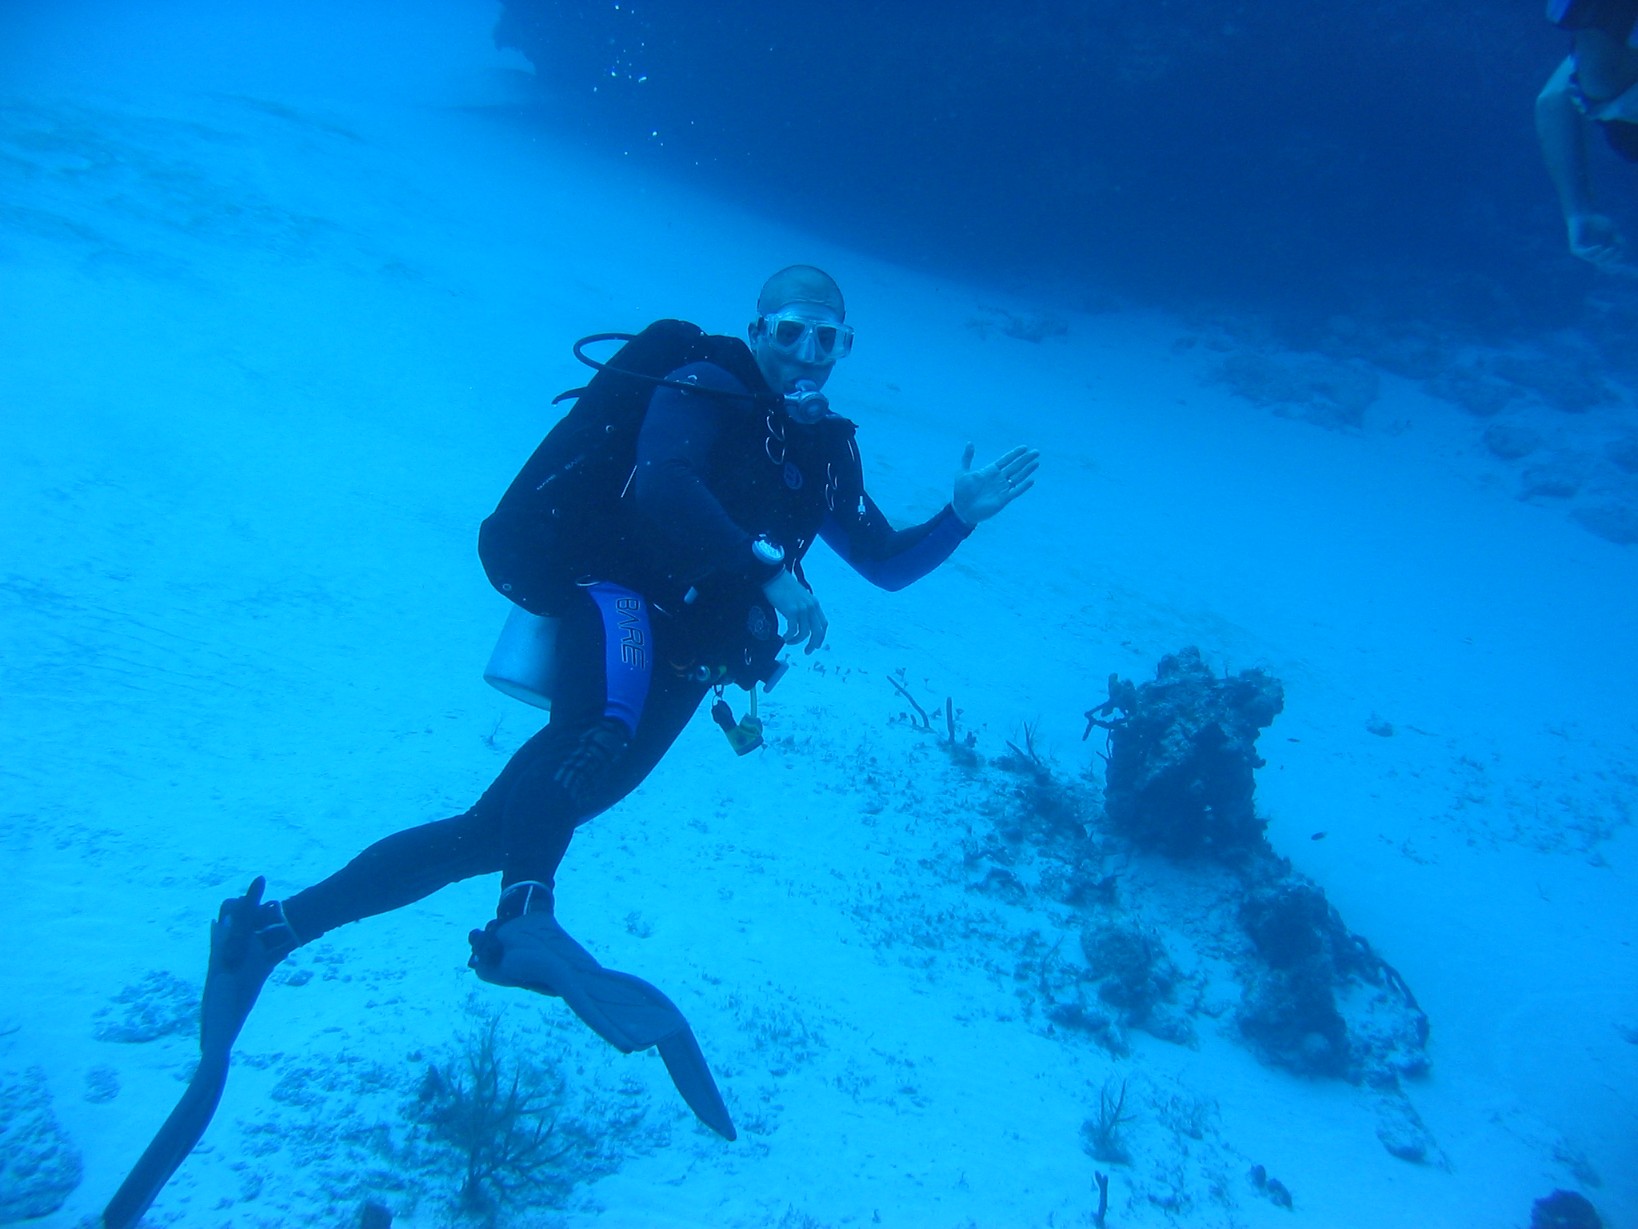 Todd scuba diving